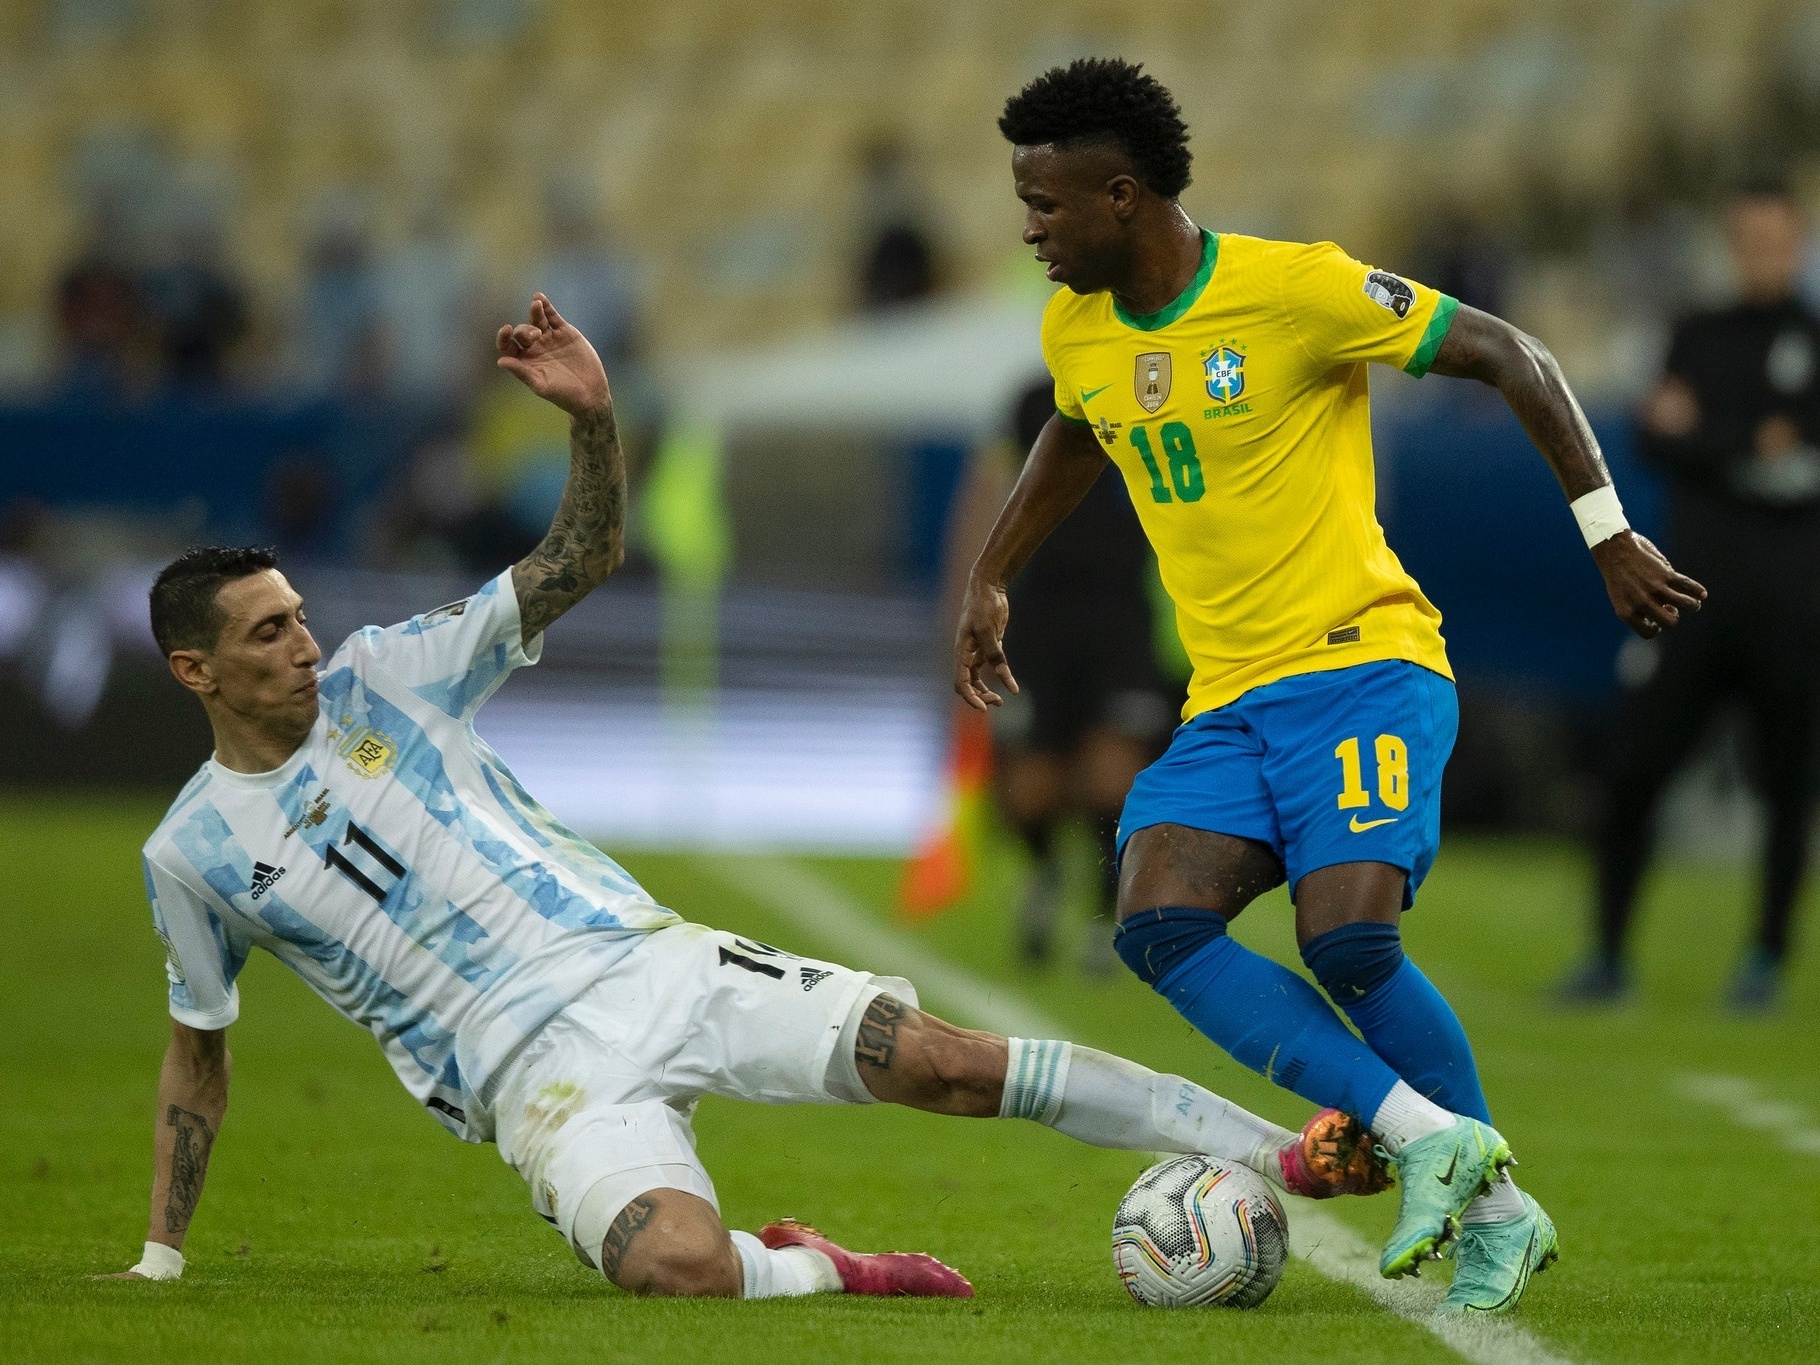 Brasil x Argentina pelas Eliminatórias da Copa do Mundo: veja o que está em  jogo - NSC Total